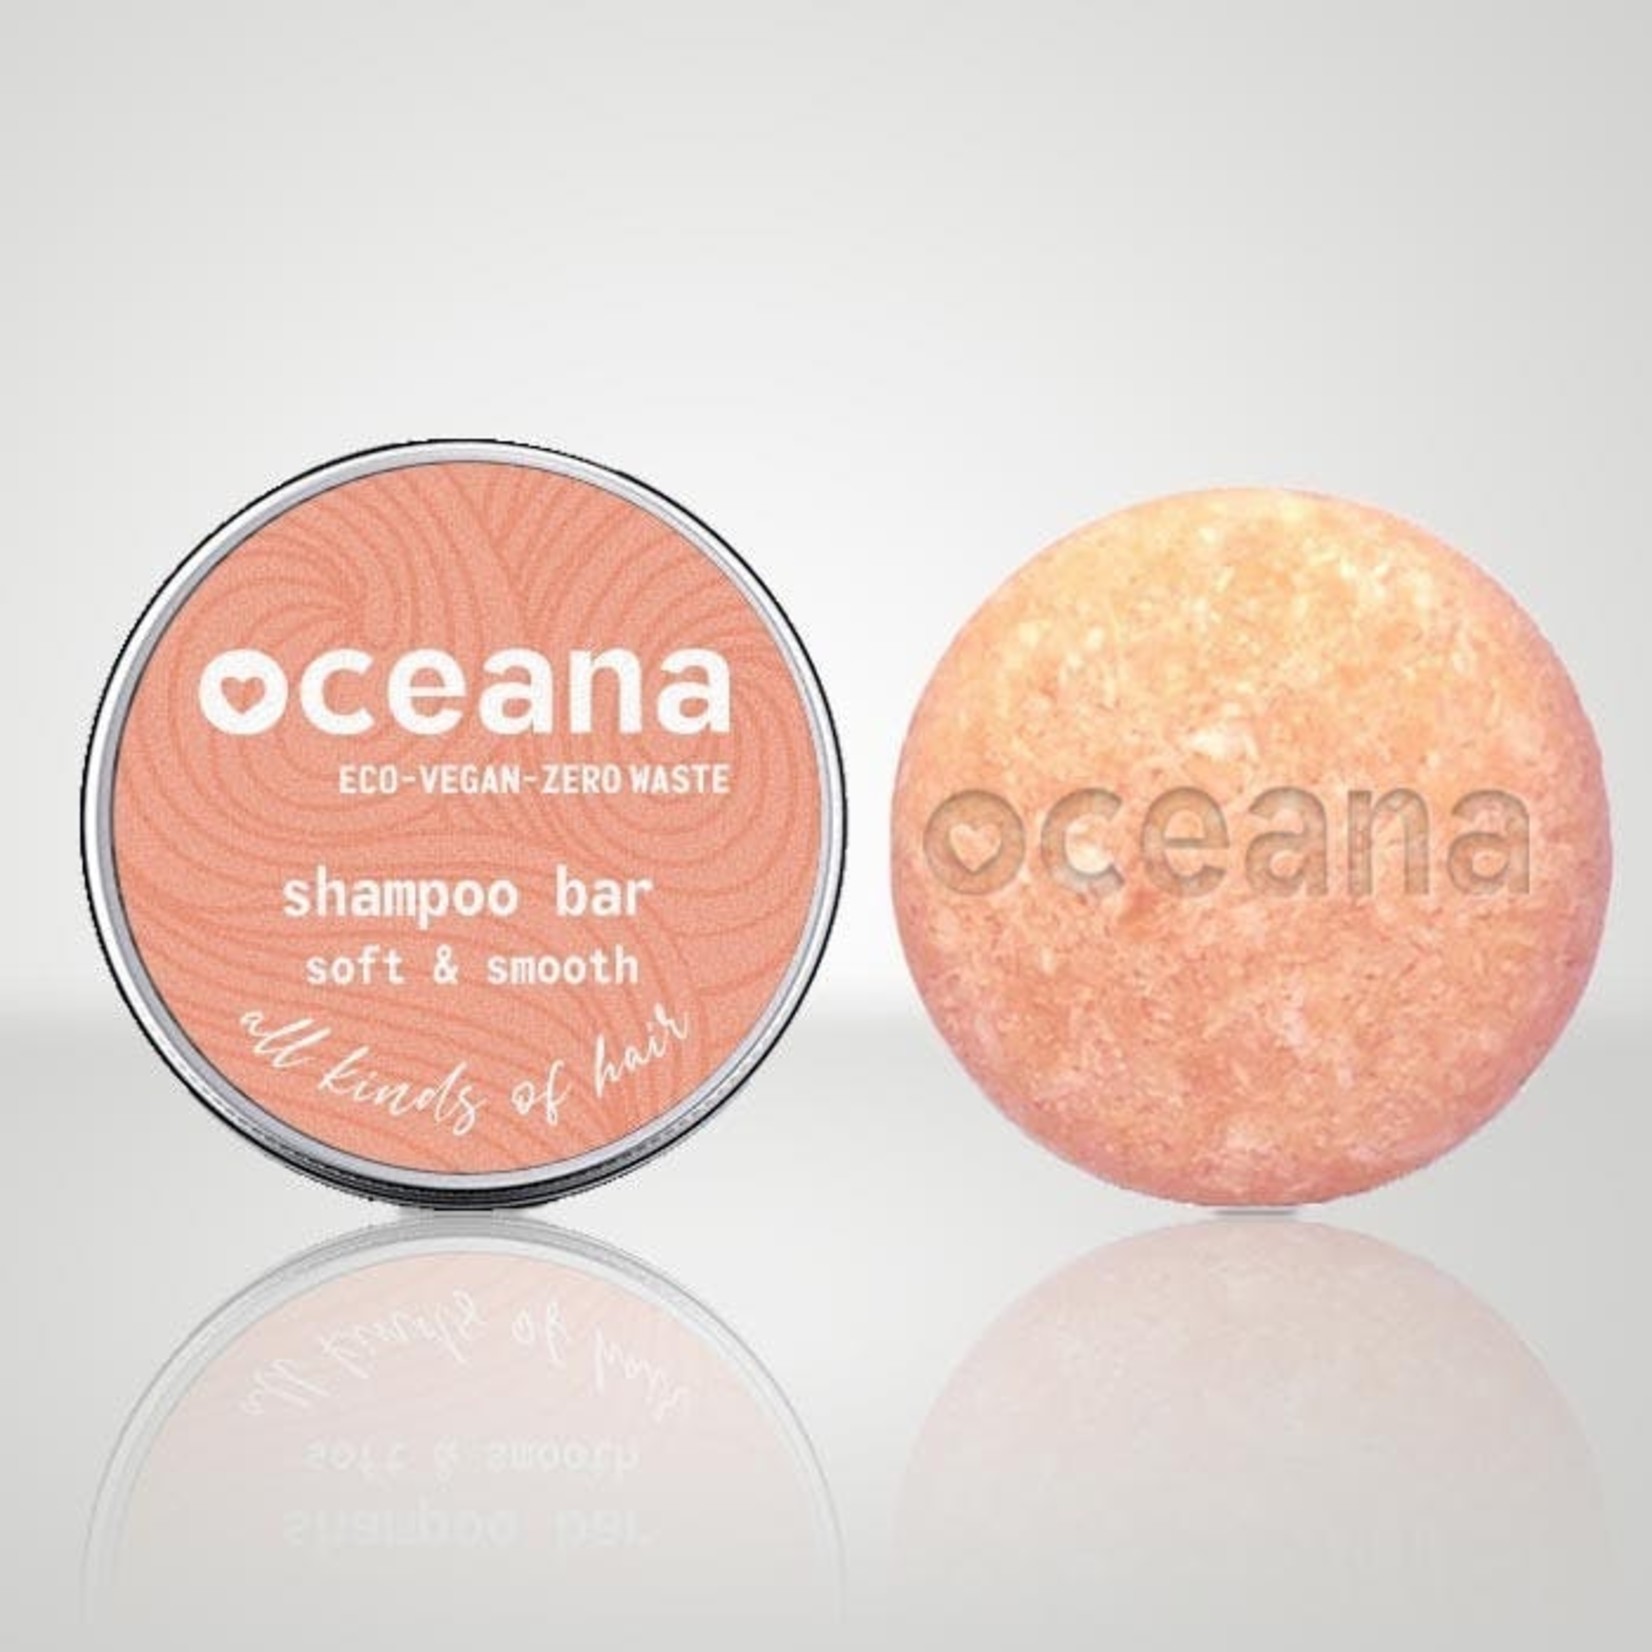 Oceana Oceana - natuurlijke shampoobar voor het hele gezin.